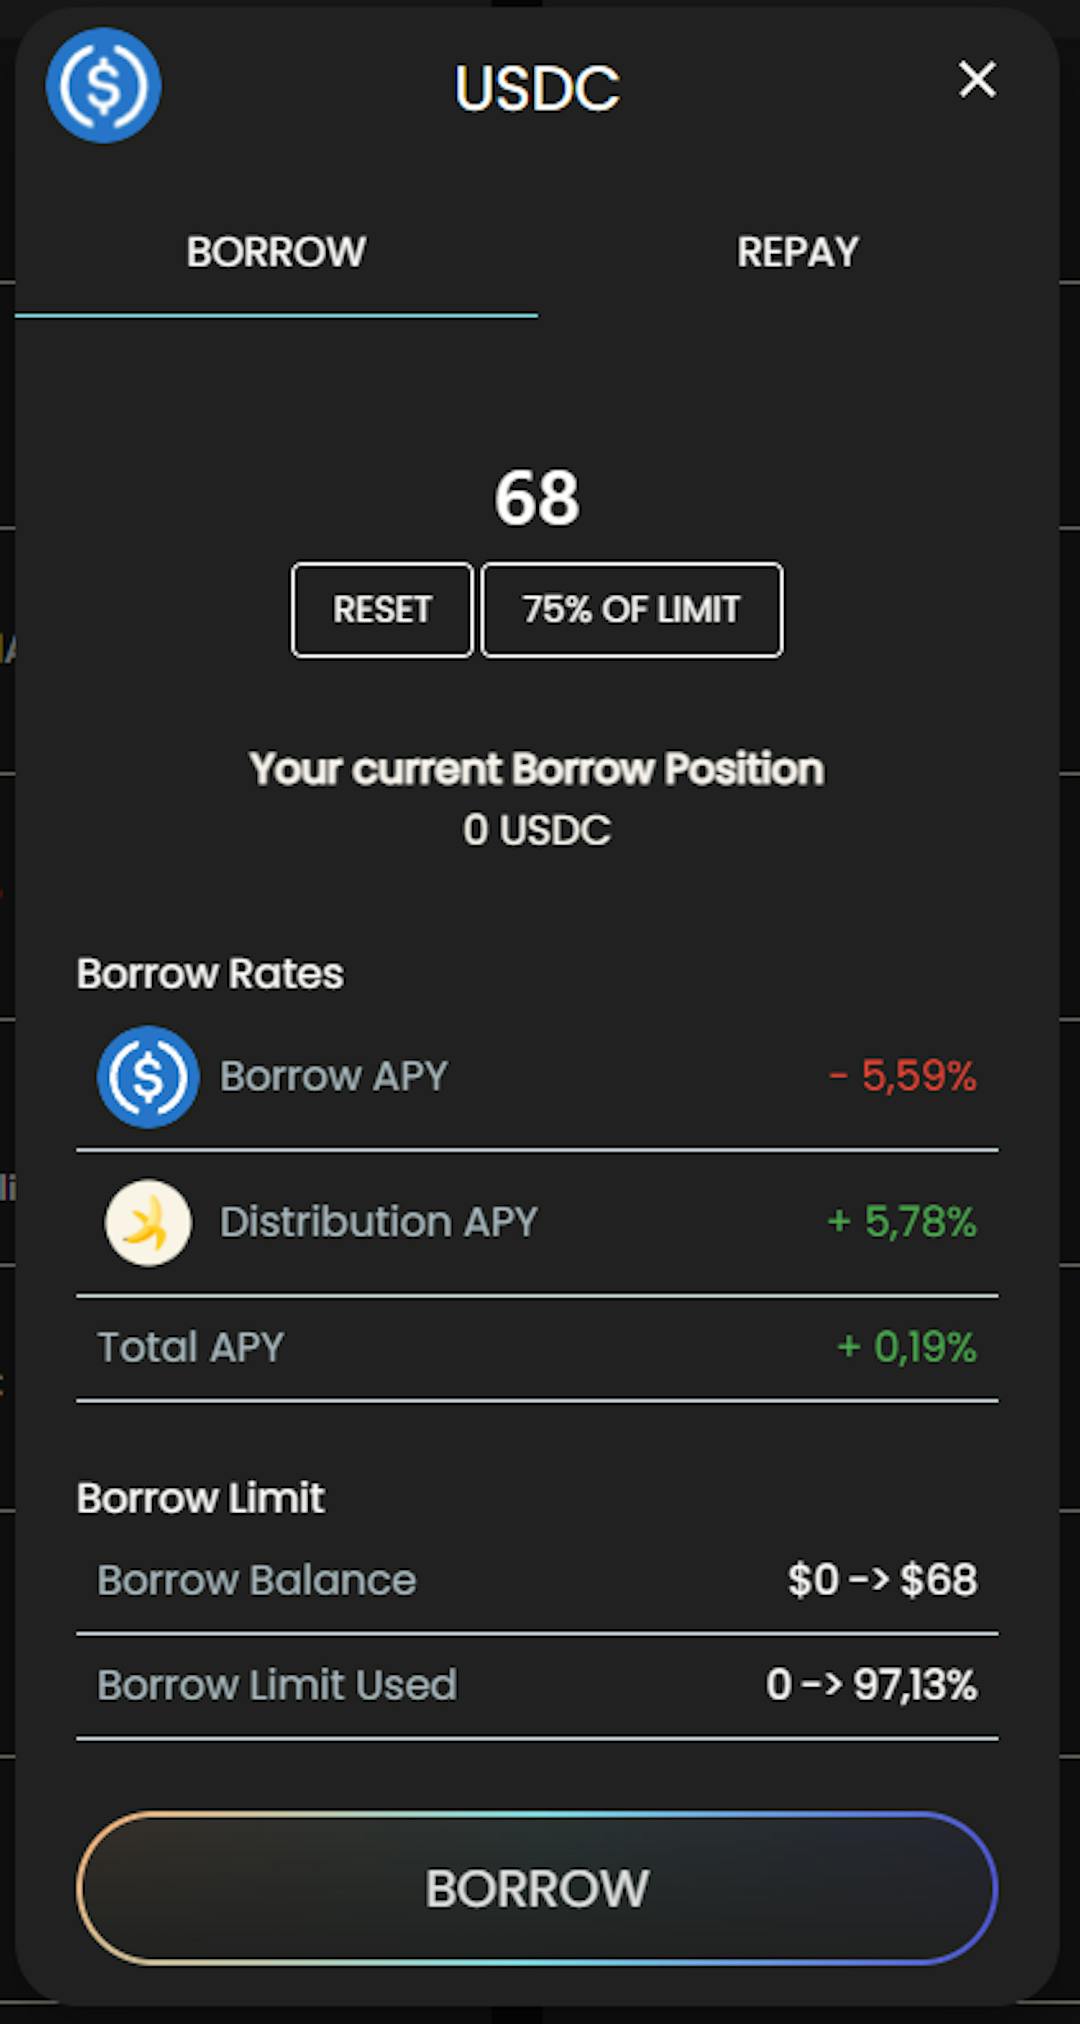 Borrow 68 USDC form